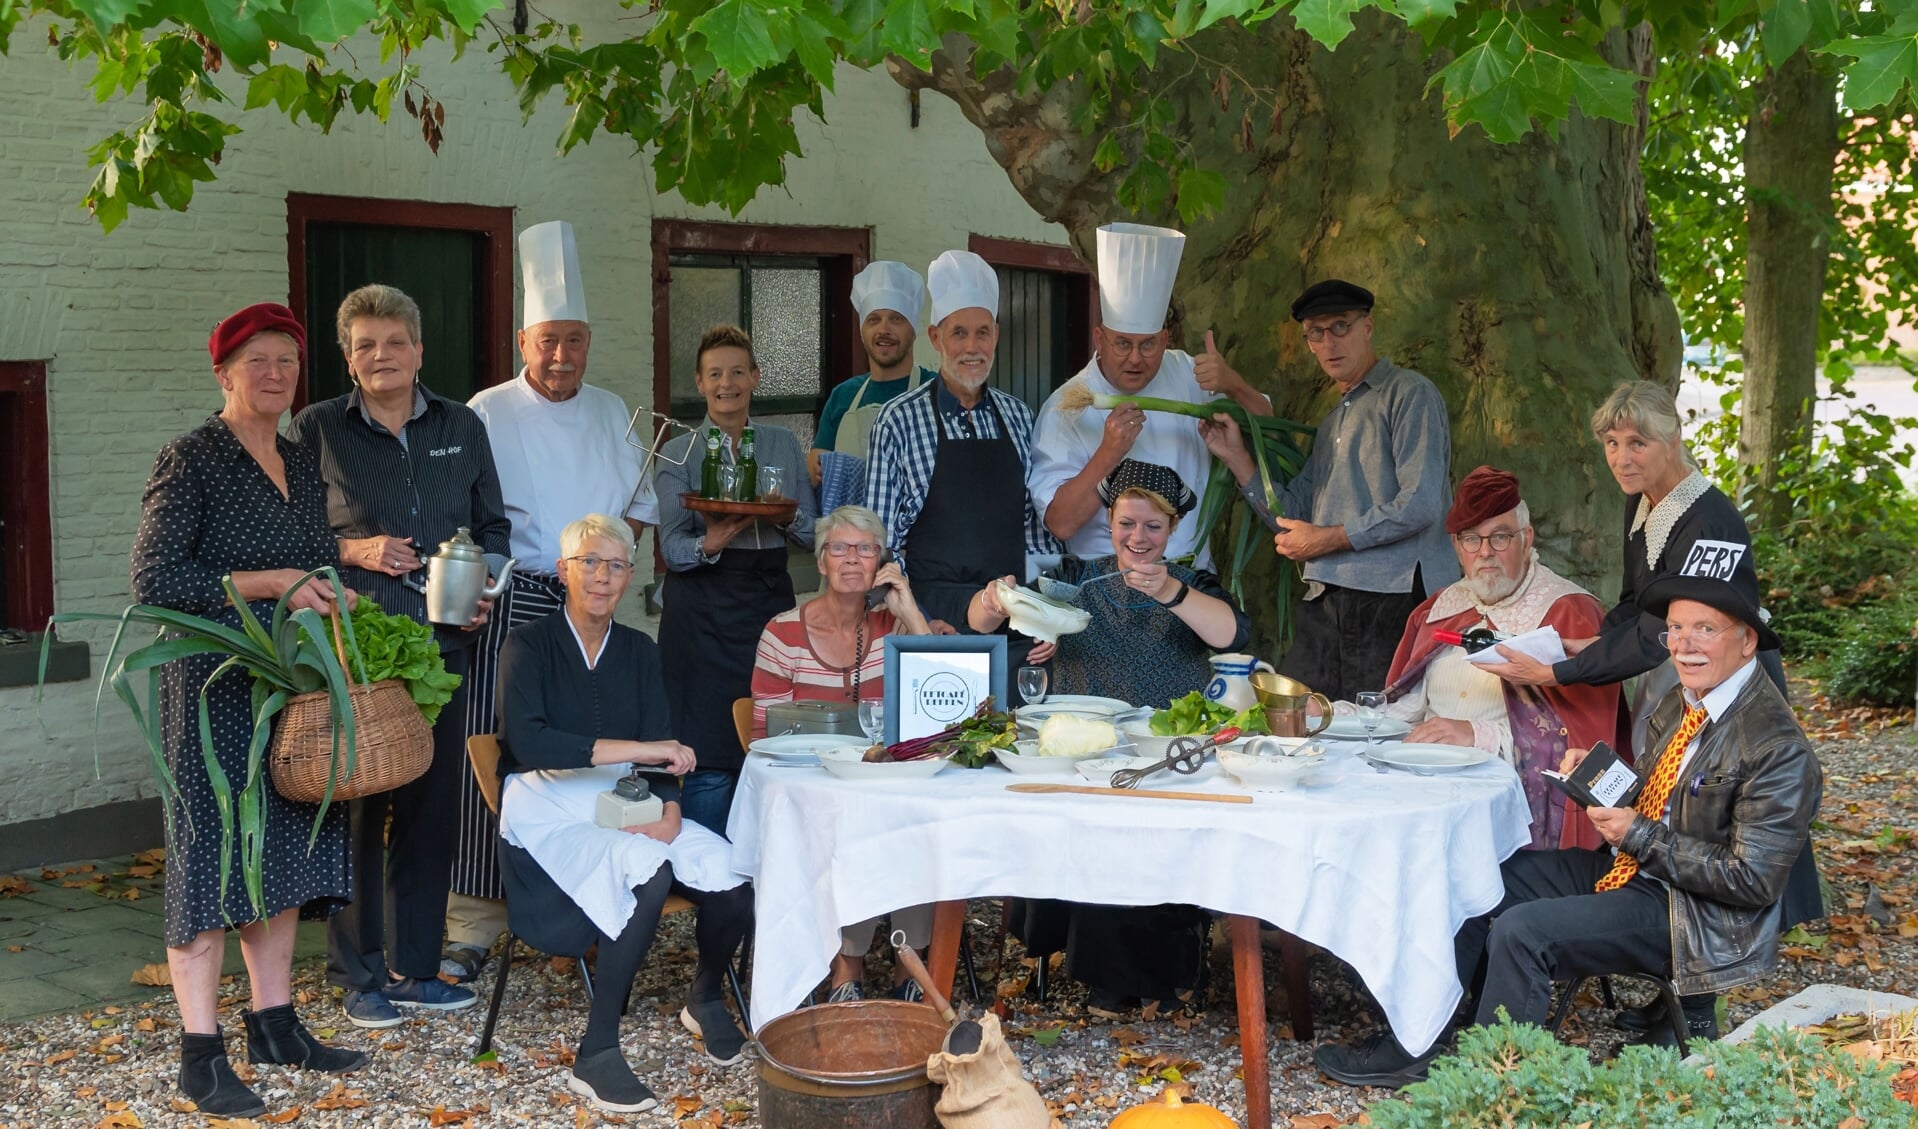 De kookgroep onder de ruim 170-jarige plataan, bij het 25ste diner van Eetcafé Rekken. Foto: FotoRia